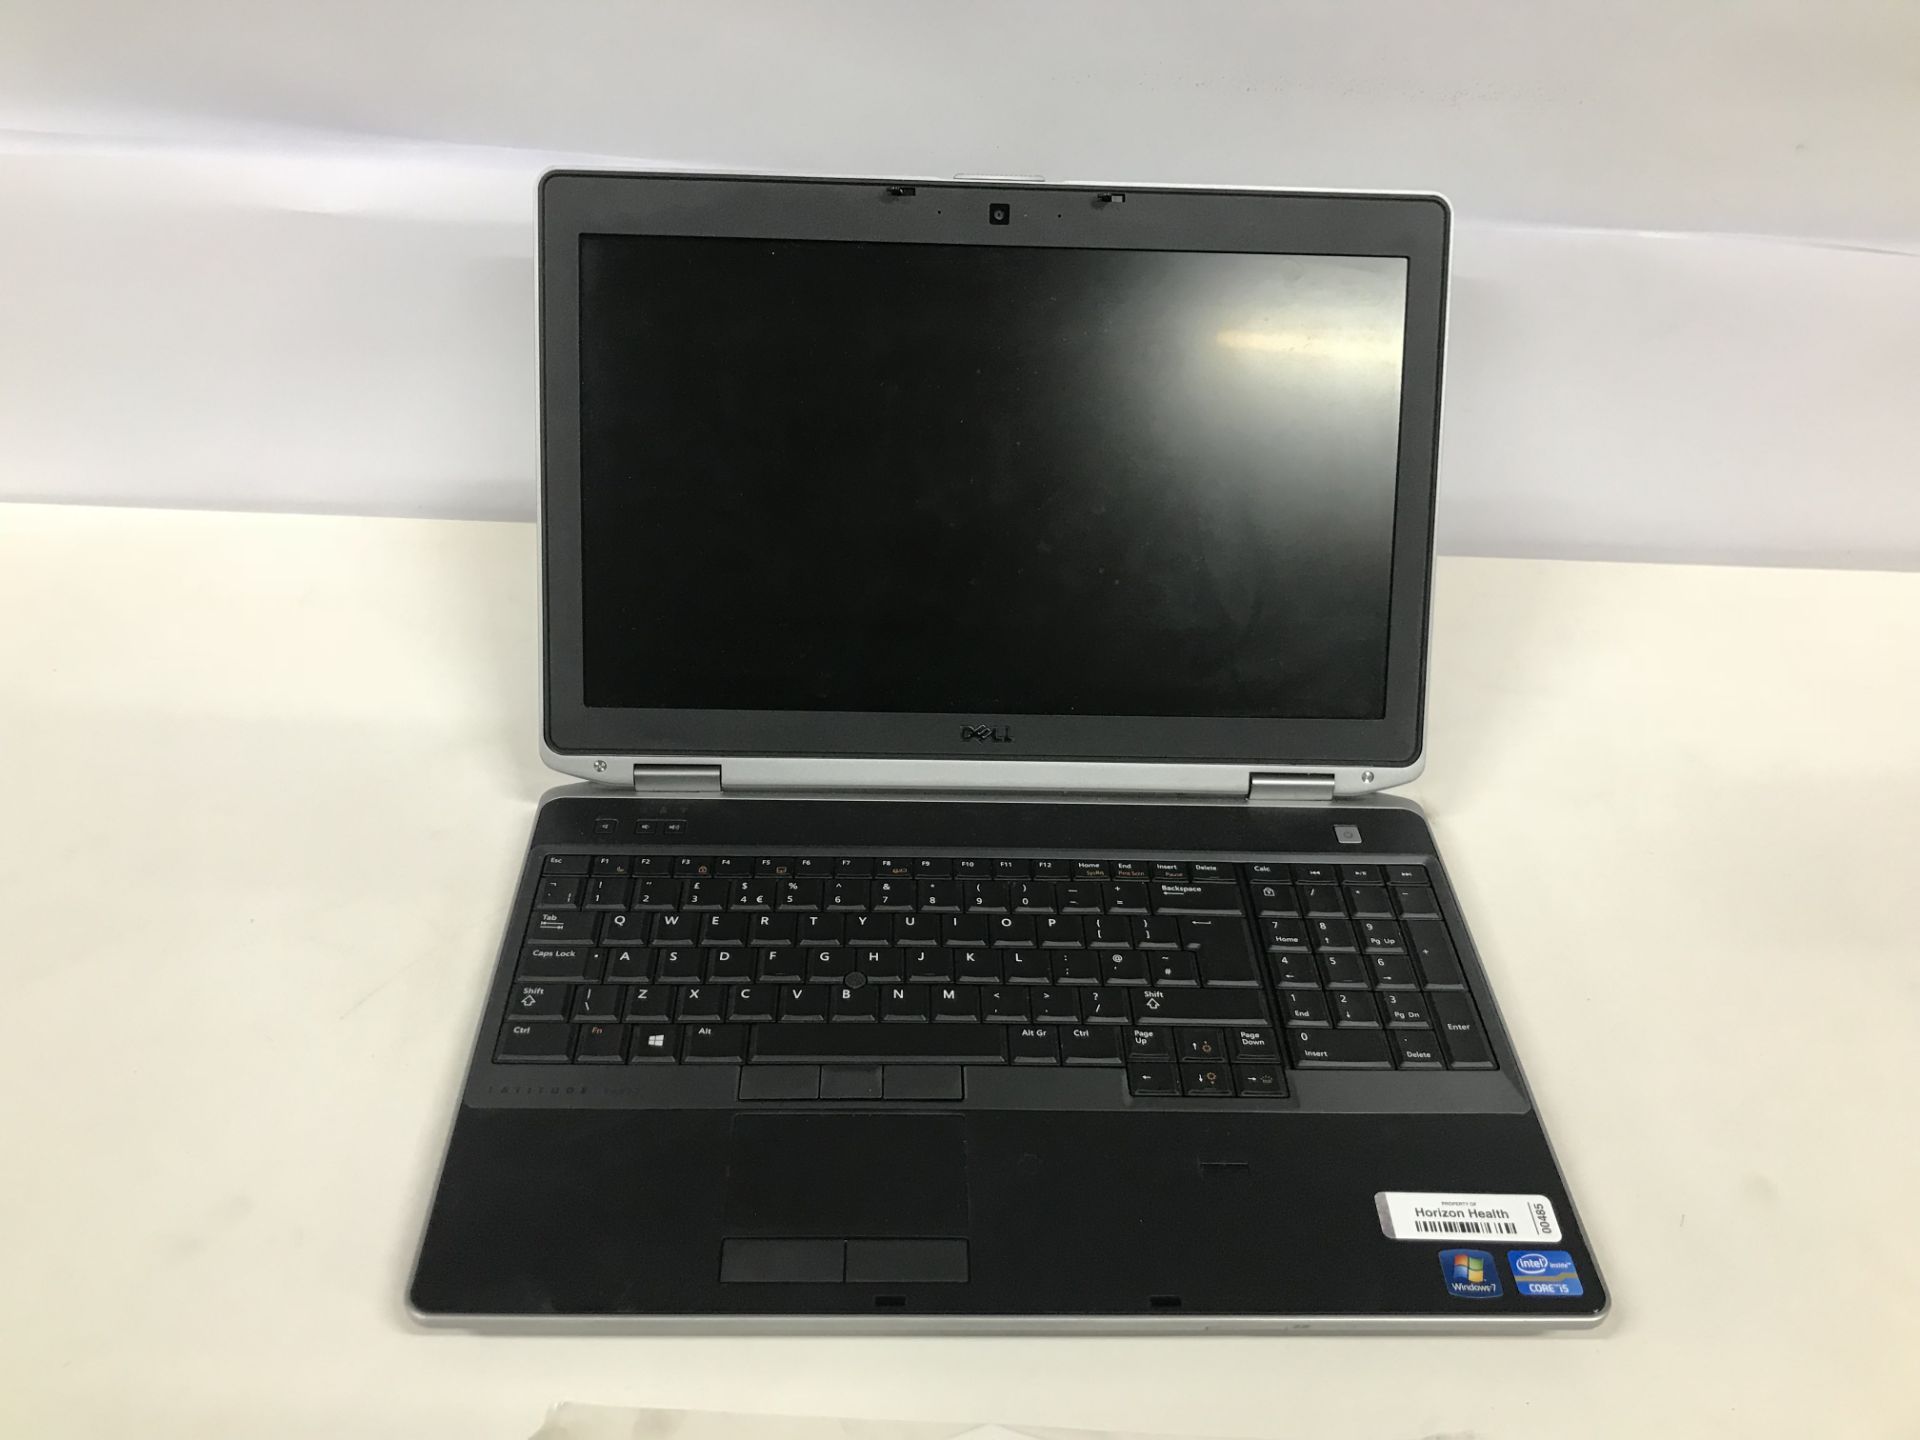 Dell Latitude E6530 Laptop - Image 2 of 2